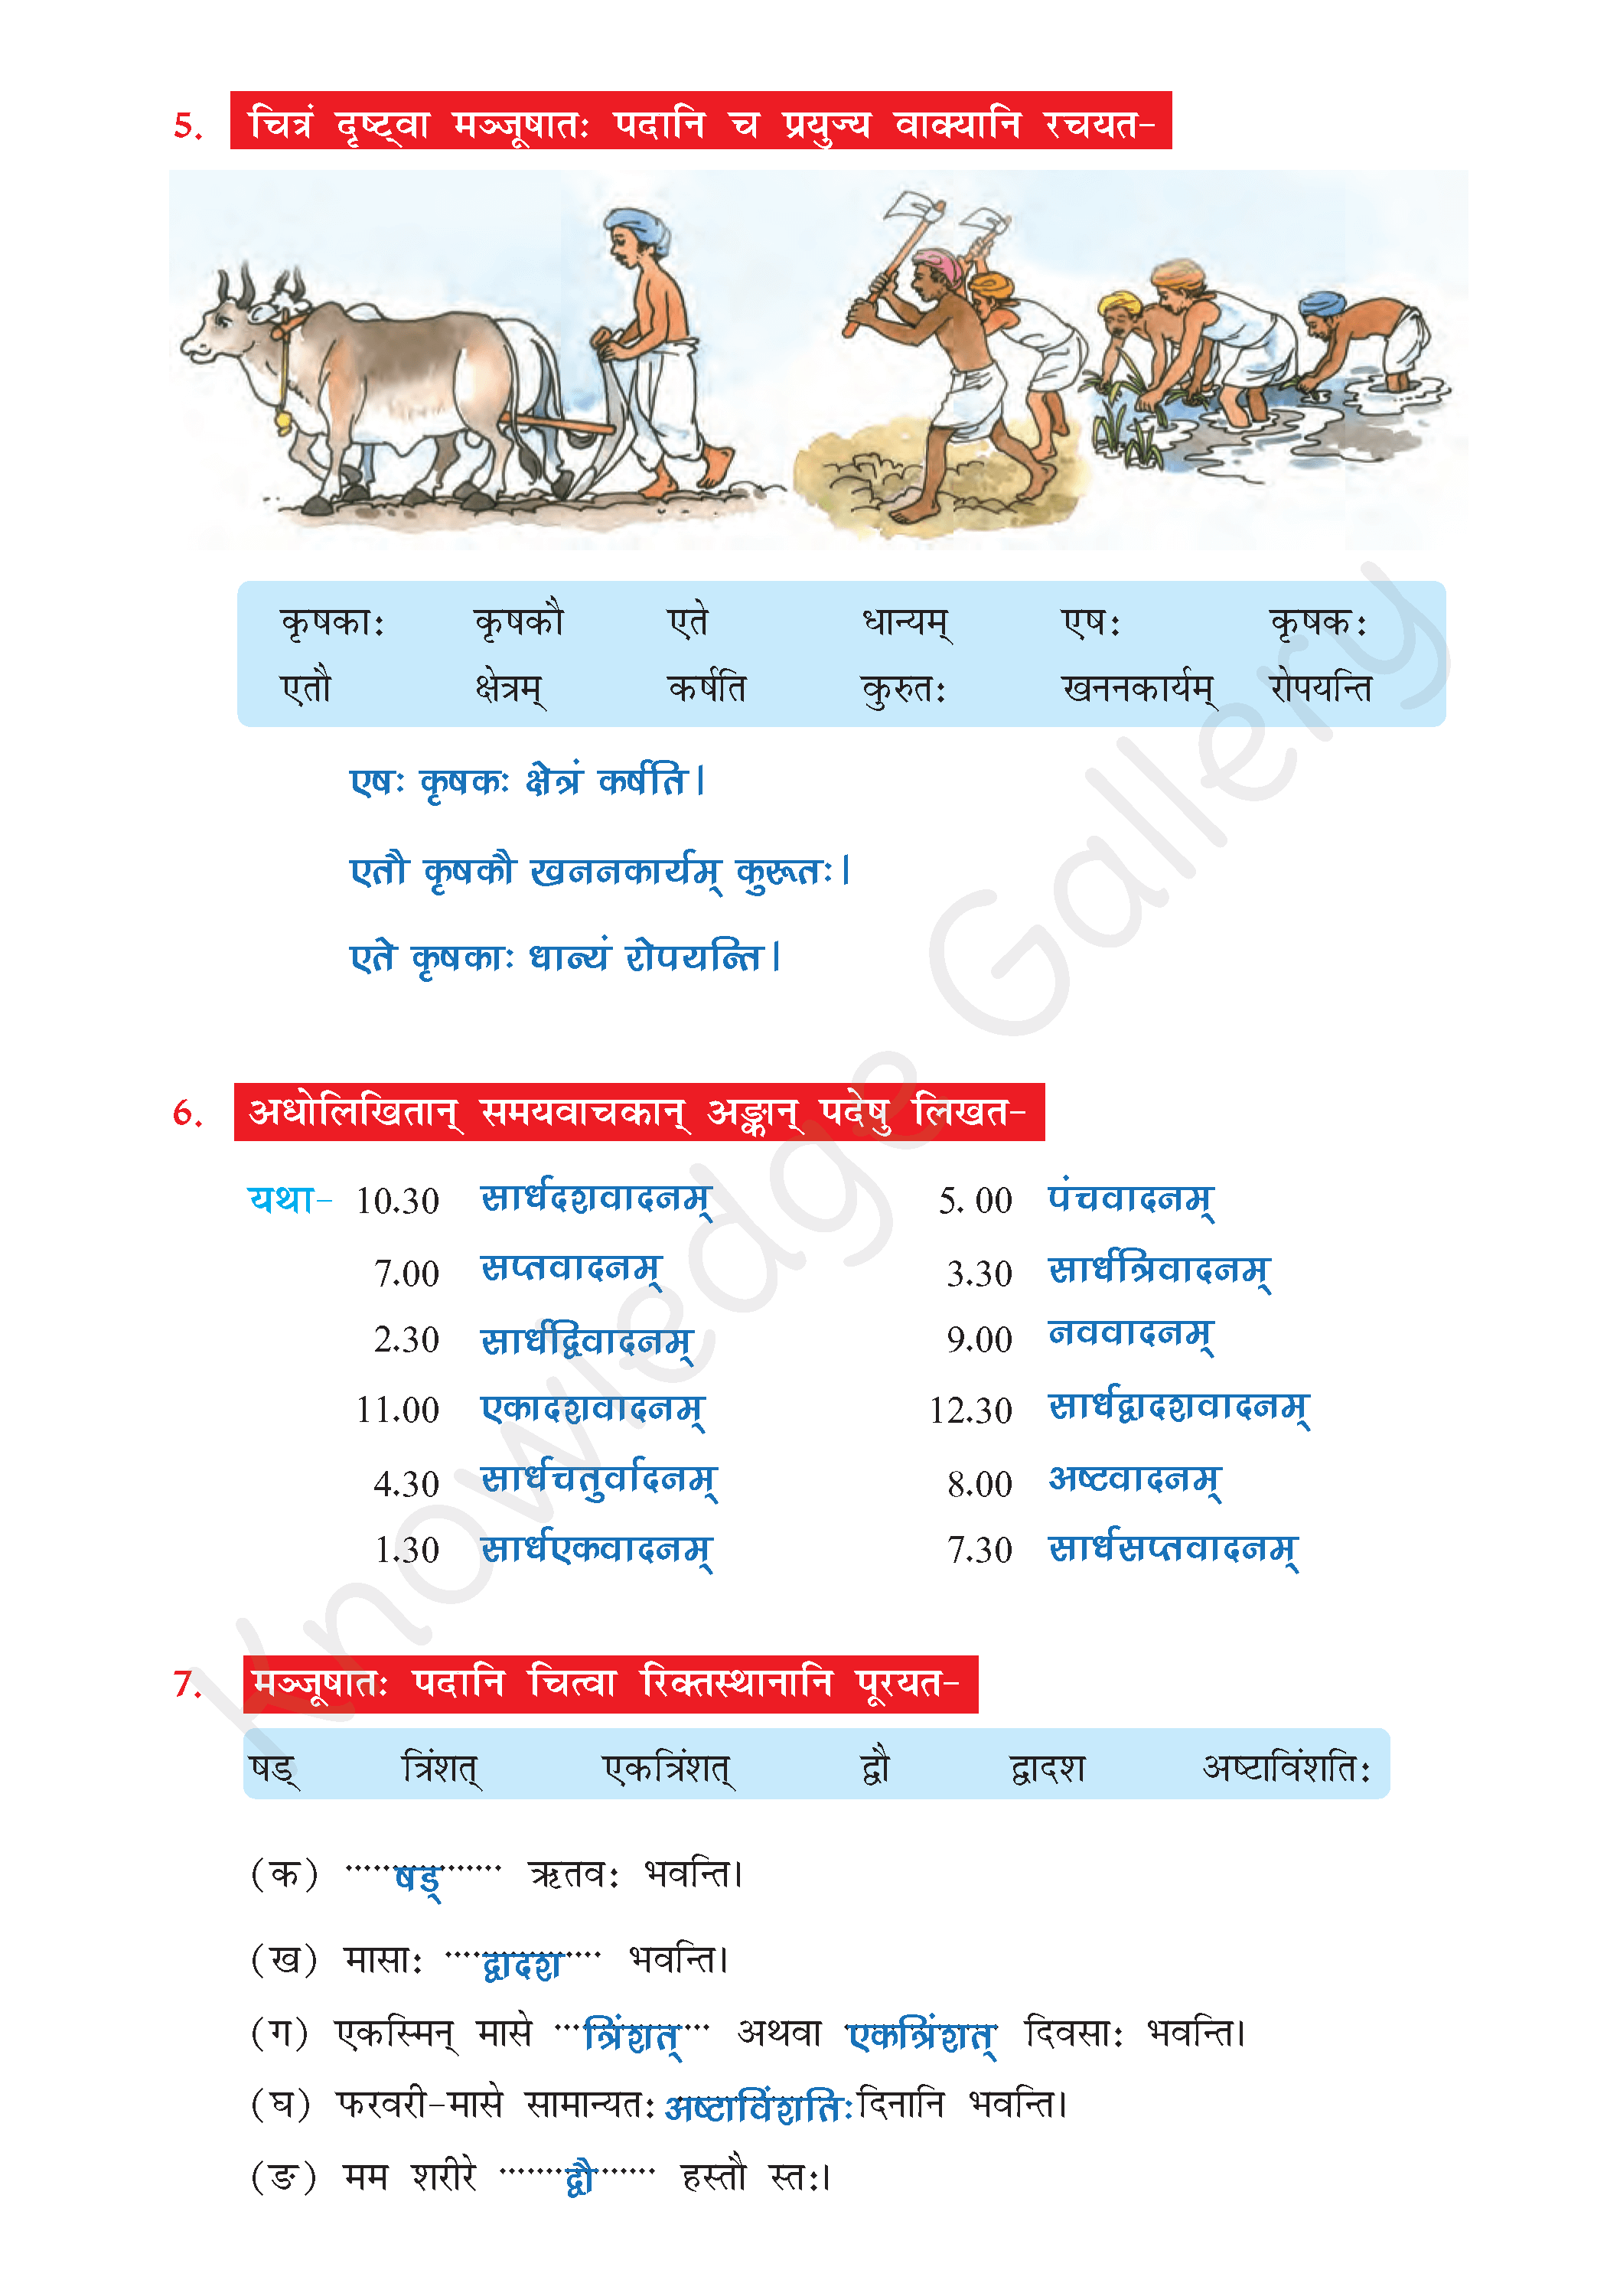 NCERT Solution For Class 7 Sanskrit Chapter 3 part 5